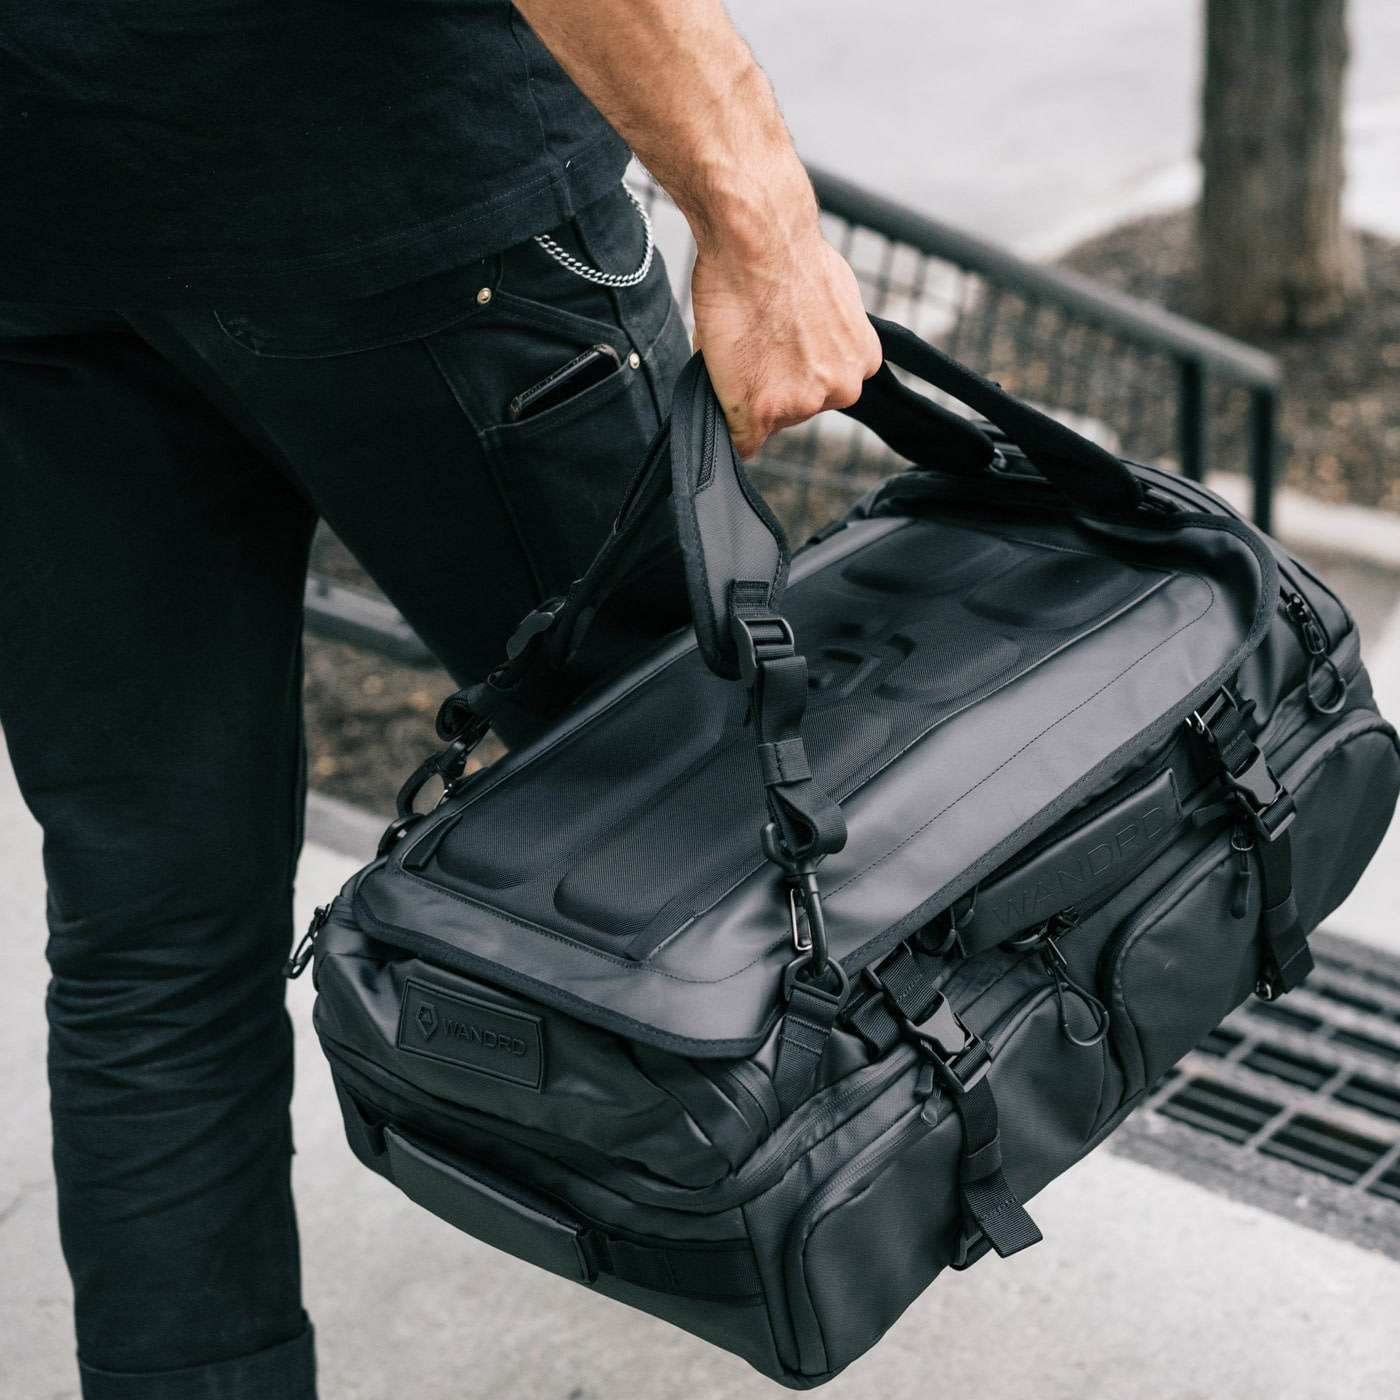 Ultra-organized backpack